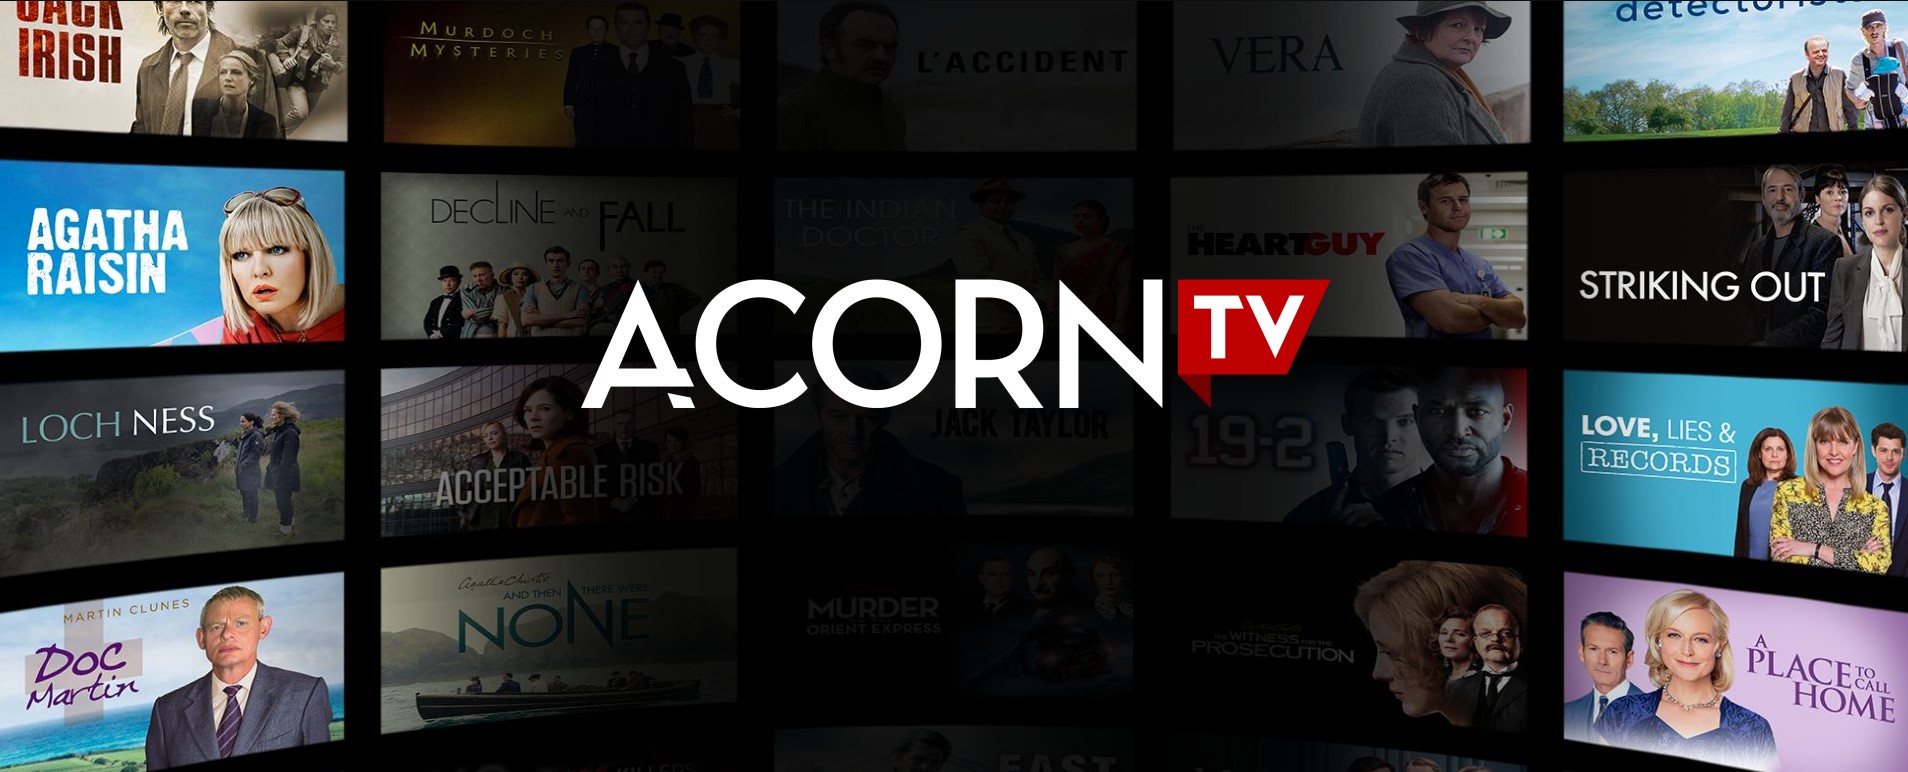 acorn.tv